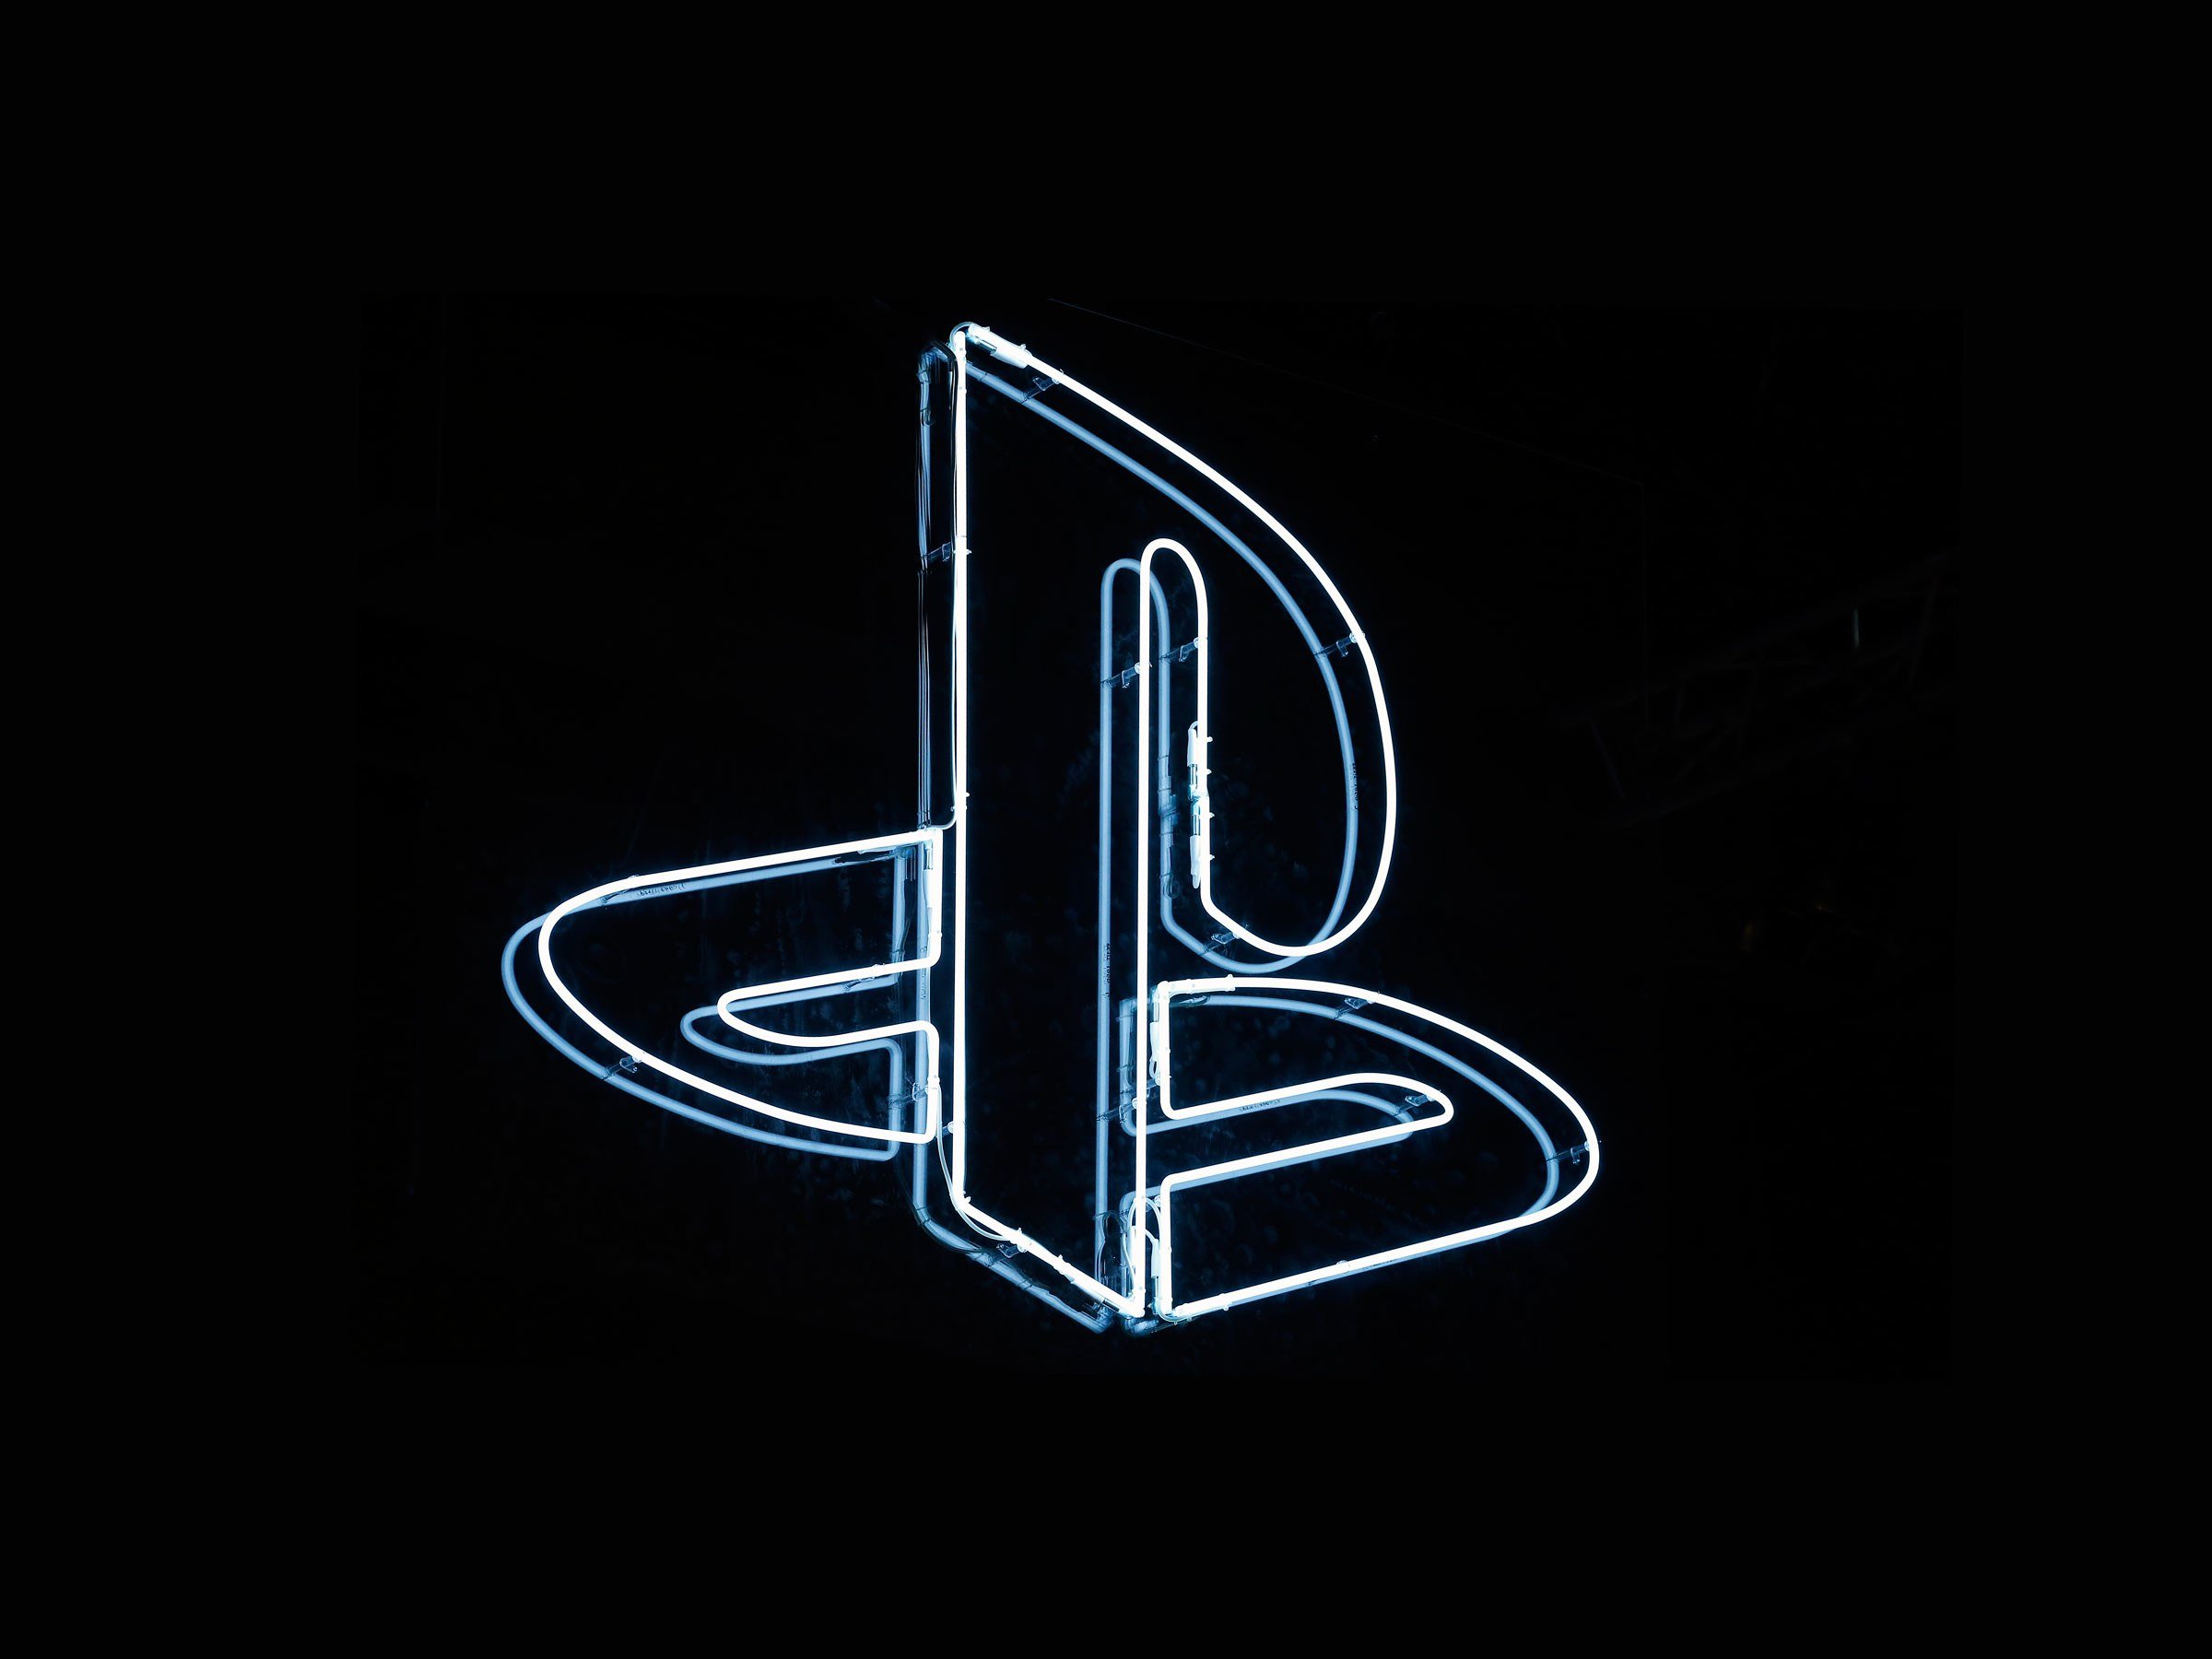 Es revela el nou controlador Sony PlayStation 5 'DualSense', com es compara el gamepad PS5 amb el controlador Microsoft Xbox Series X